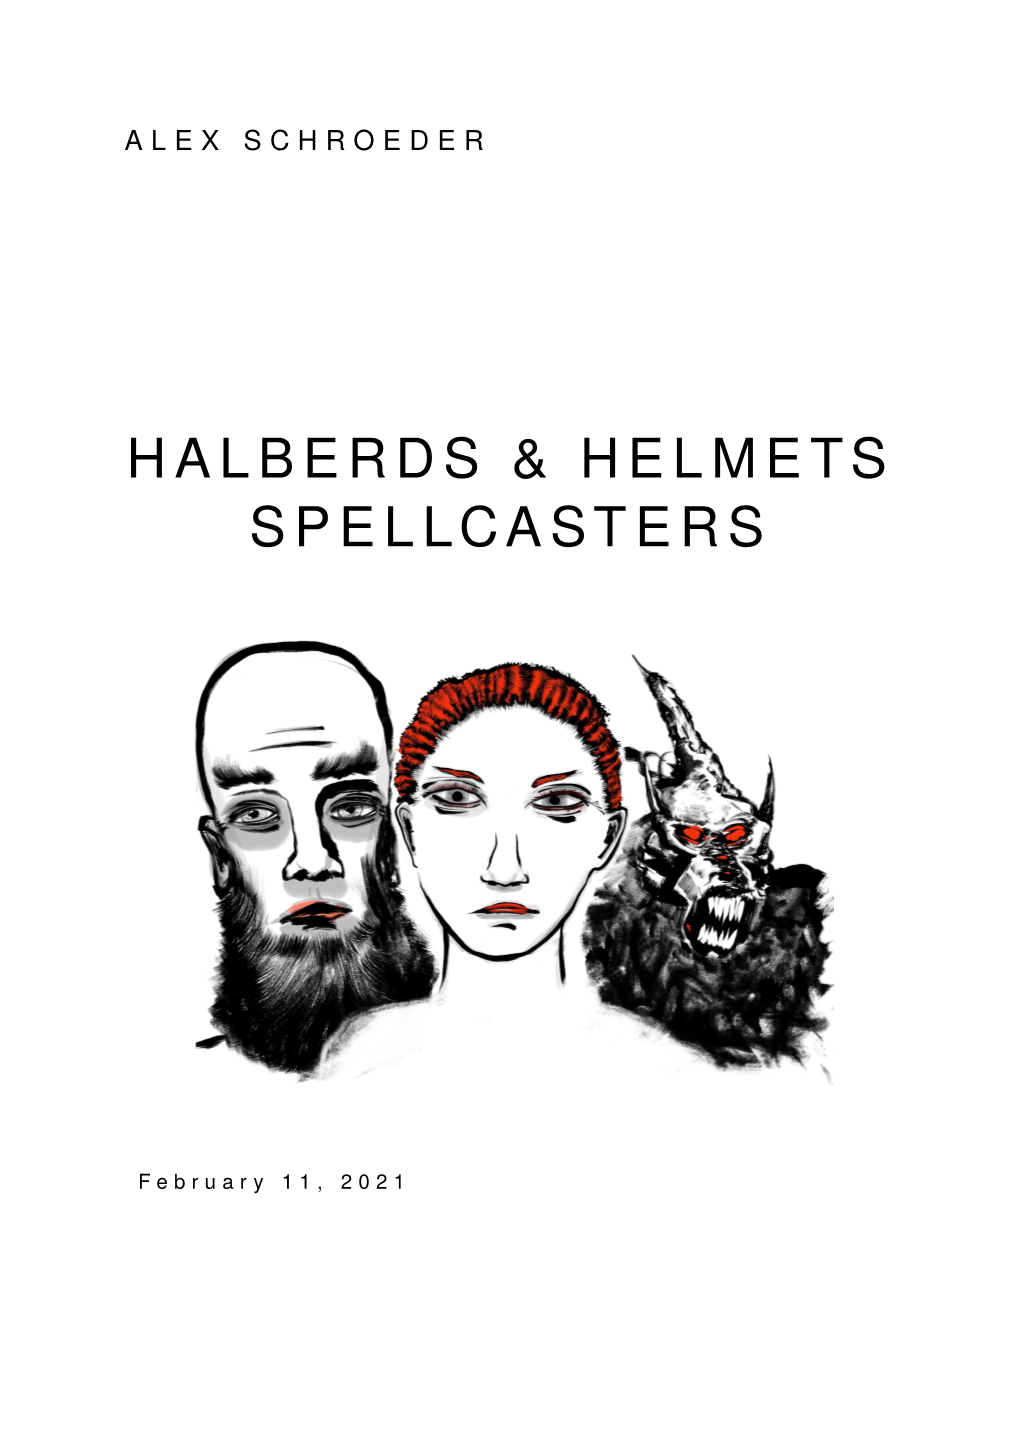 Halberds & Helmets Spellcasters